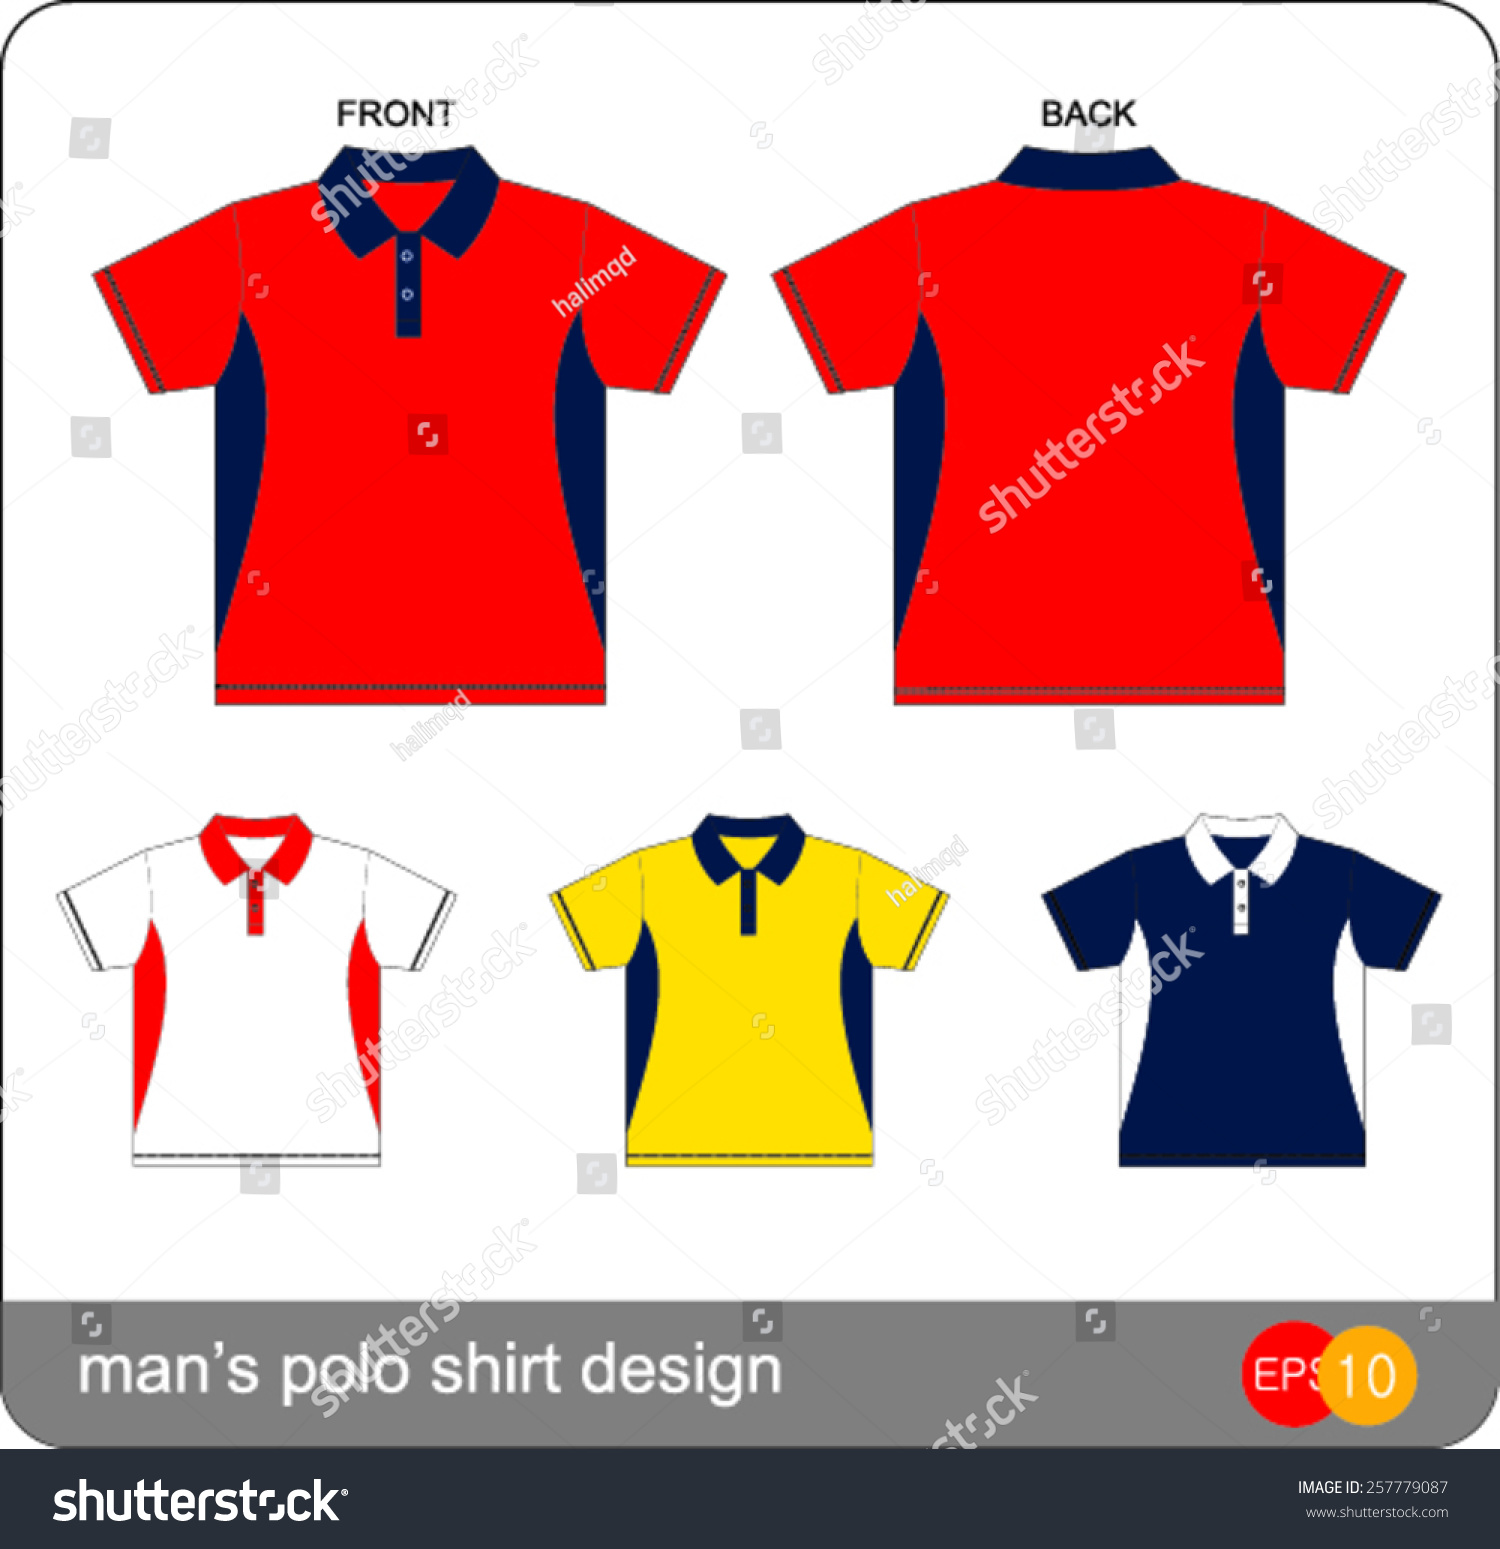 Man'S Polo Shirt Design Vector Template - 257779087 : Shutterstock